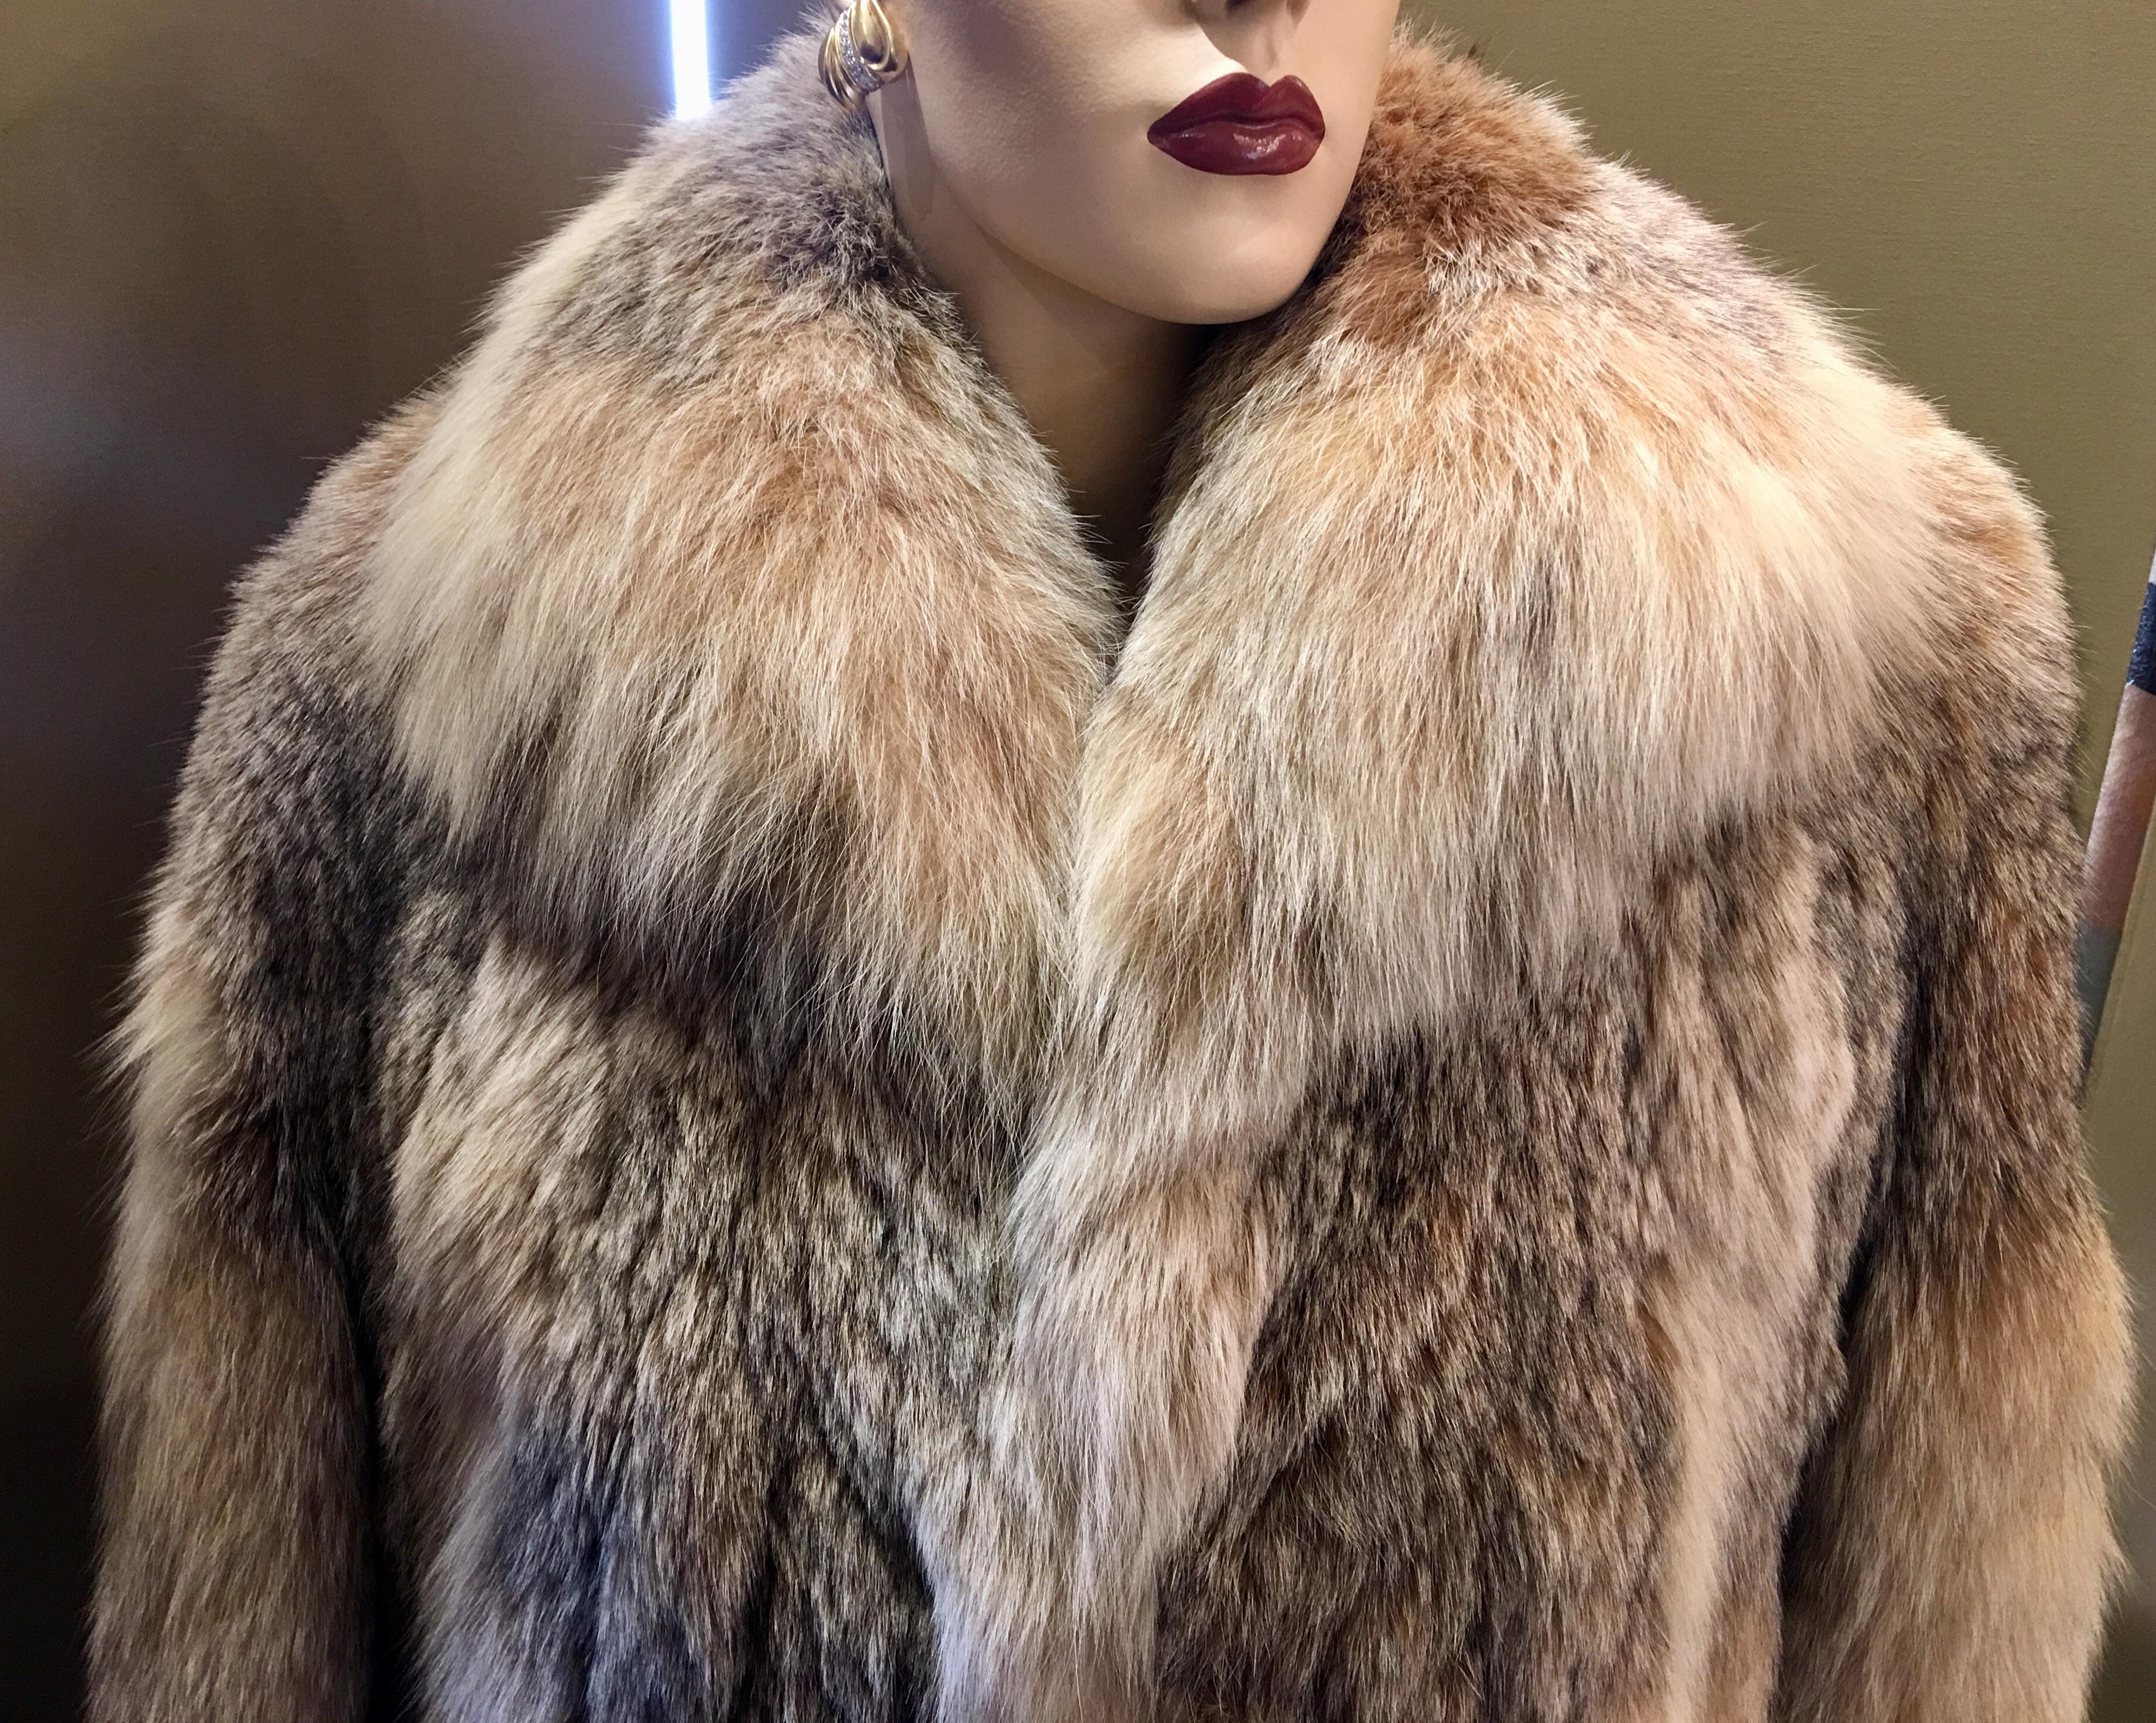 Sumptuous Siberian Lynx Fur Coat by Revillion Paris New York Full Length 1